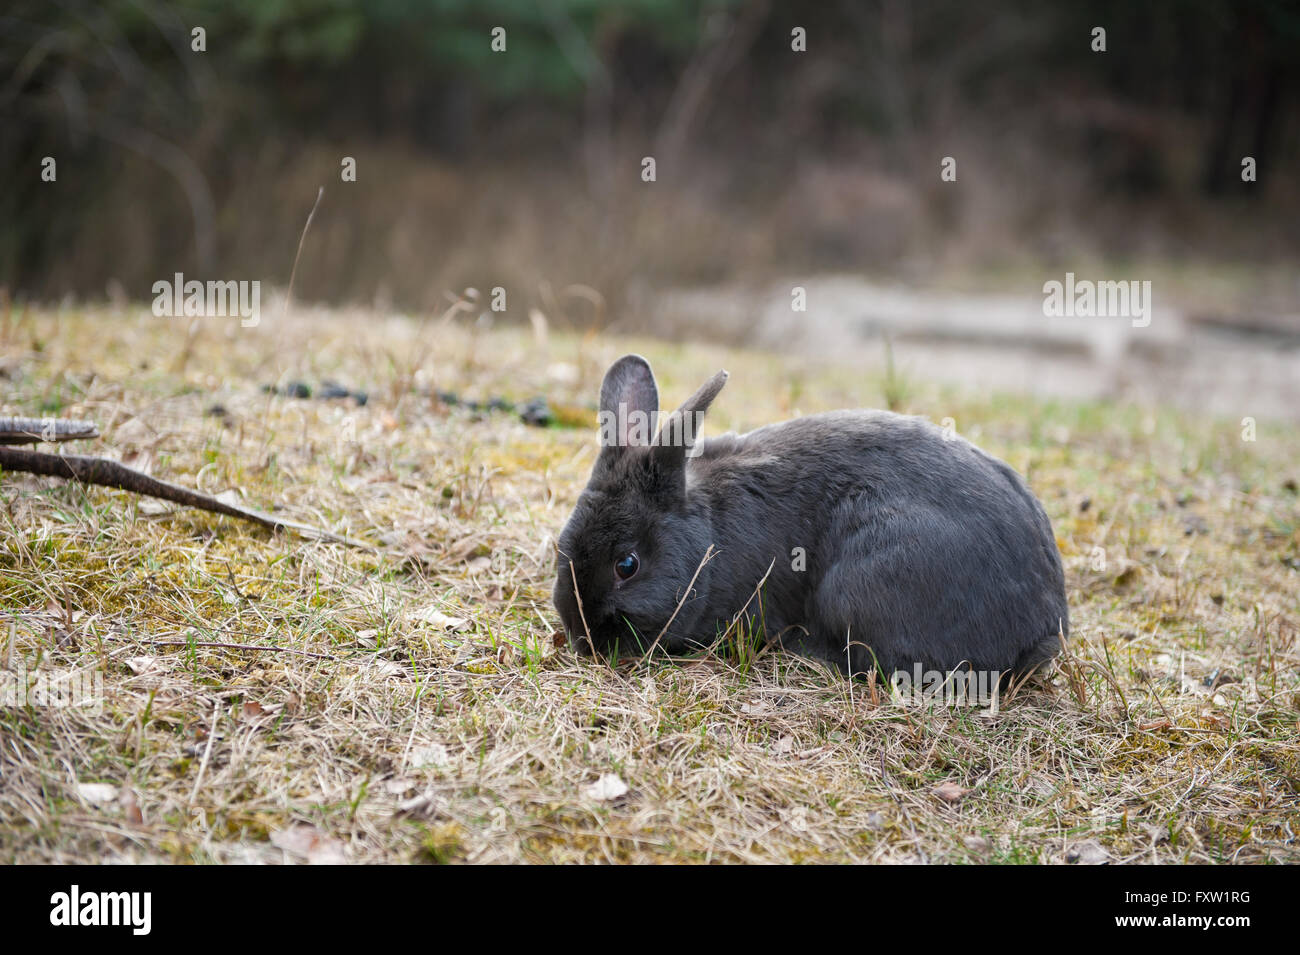 Addomesticazione affossato coniglio nero seduto alla radura nel bosco, oggetto di dumping animali randagi a sinistra dal proprietario in natura, abbandonato bunny libera Foto Stock